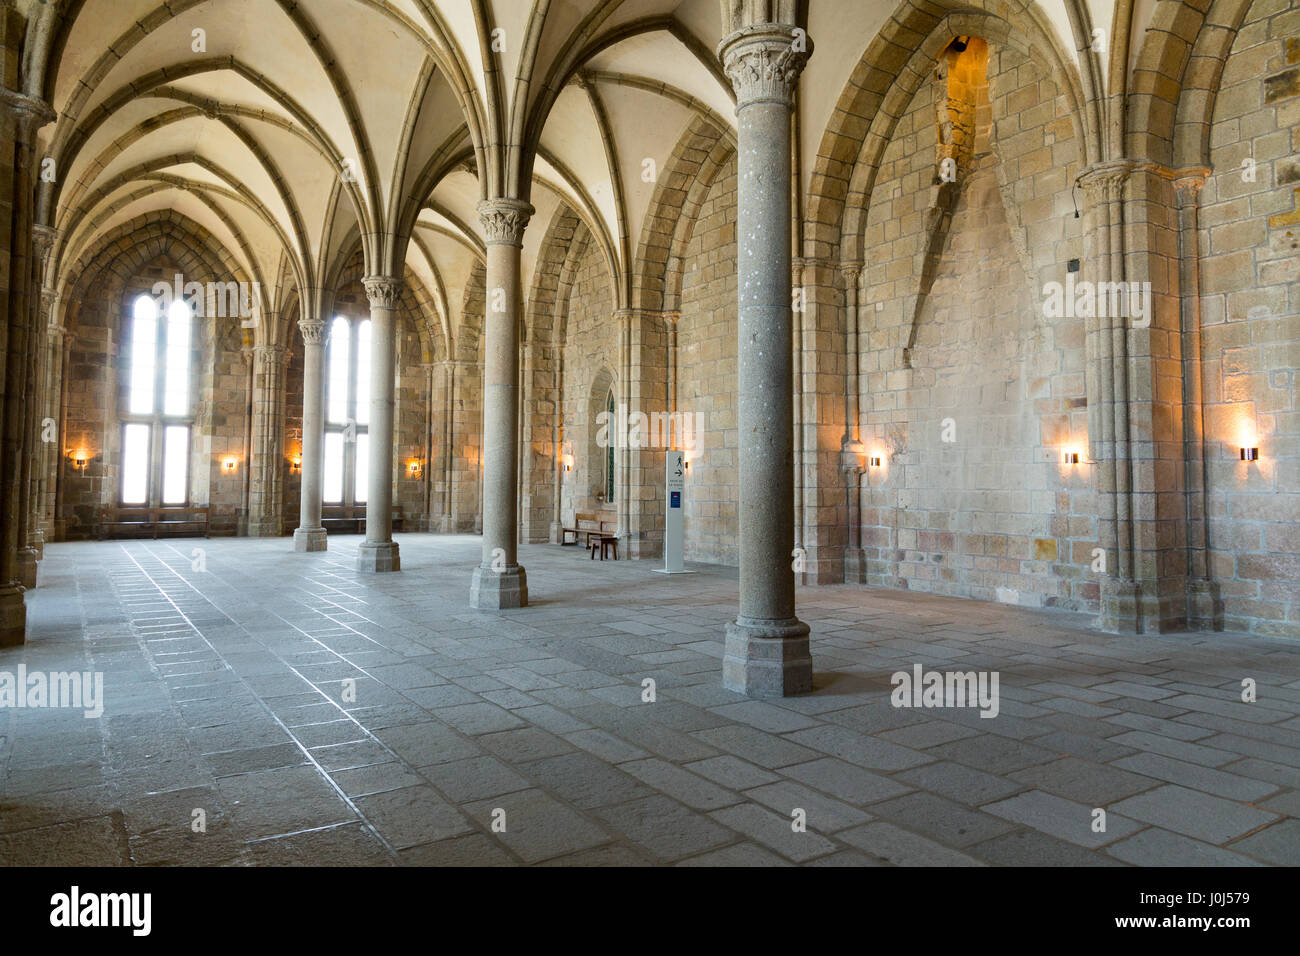 Les salle des Hotes (salle d'hôtes) à l'Abbaye du Mont-Saint-Michel en Normandie, dans le département de la Manche, France. Banque D'Images